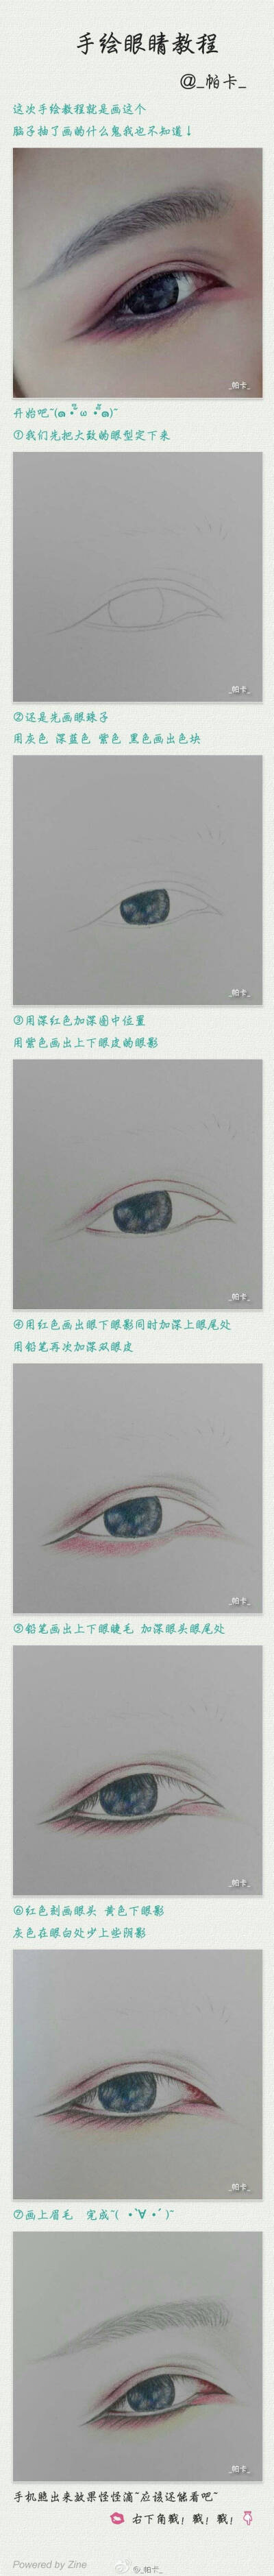 【微博_帕卡_】手绘教程来了 手绘眼睛 眼妆 cos 彩铅画 铅笔画